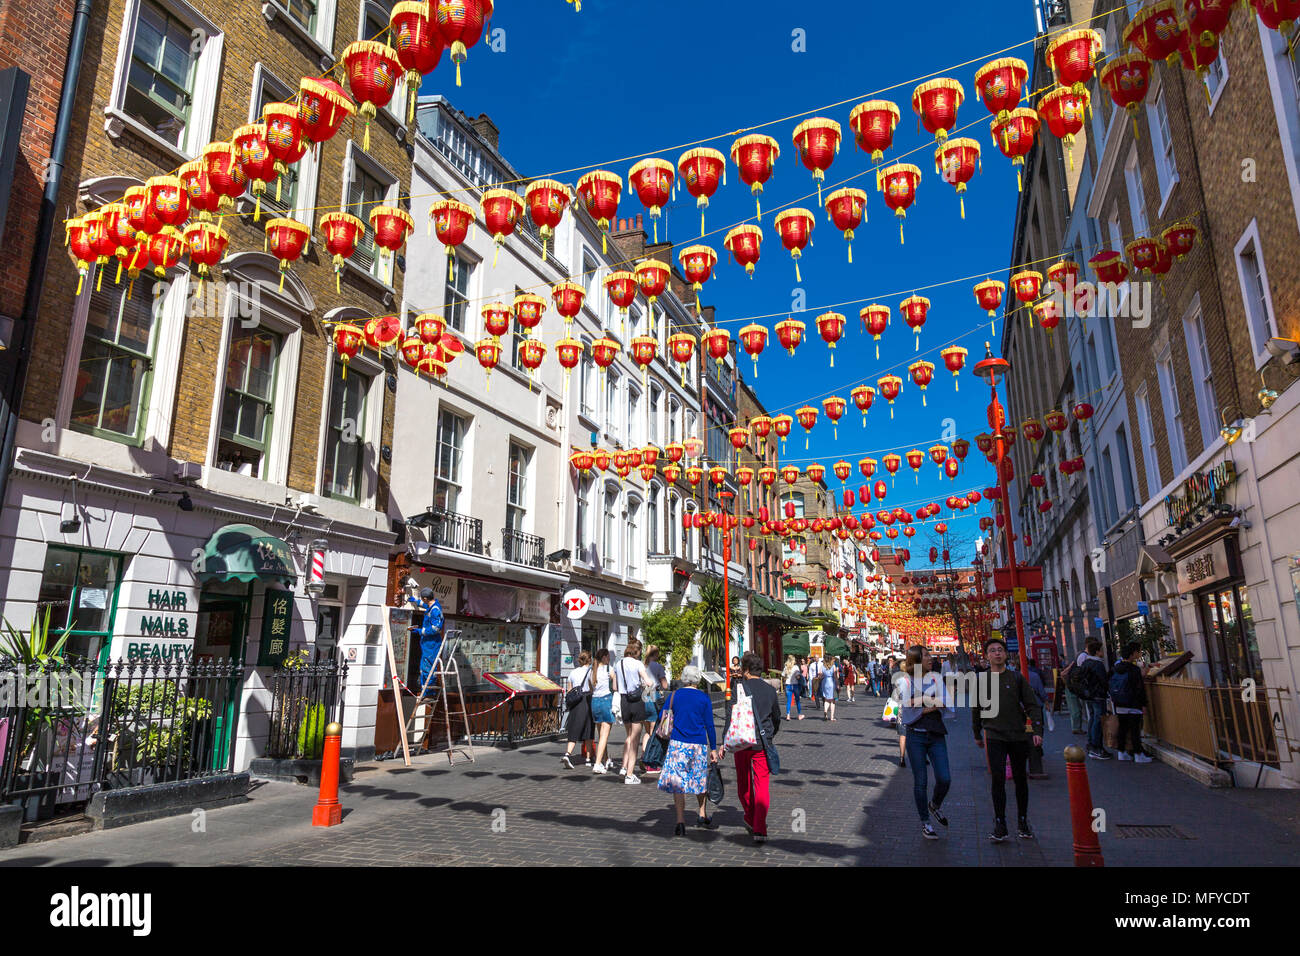 Farolillos rojos y amarillos colgando sobre una calle en China Town, Londres, Reino Unido. Foto de stock